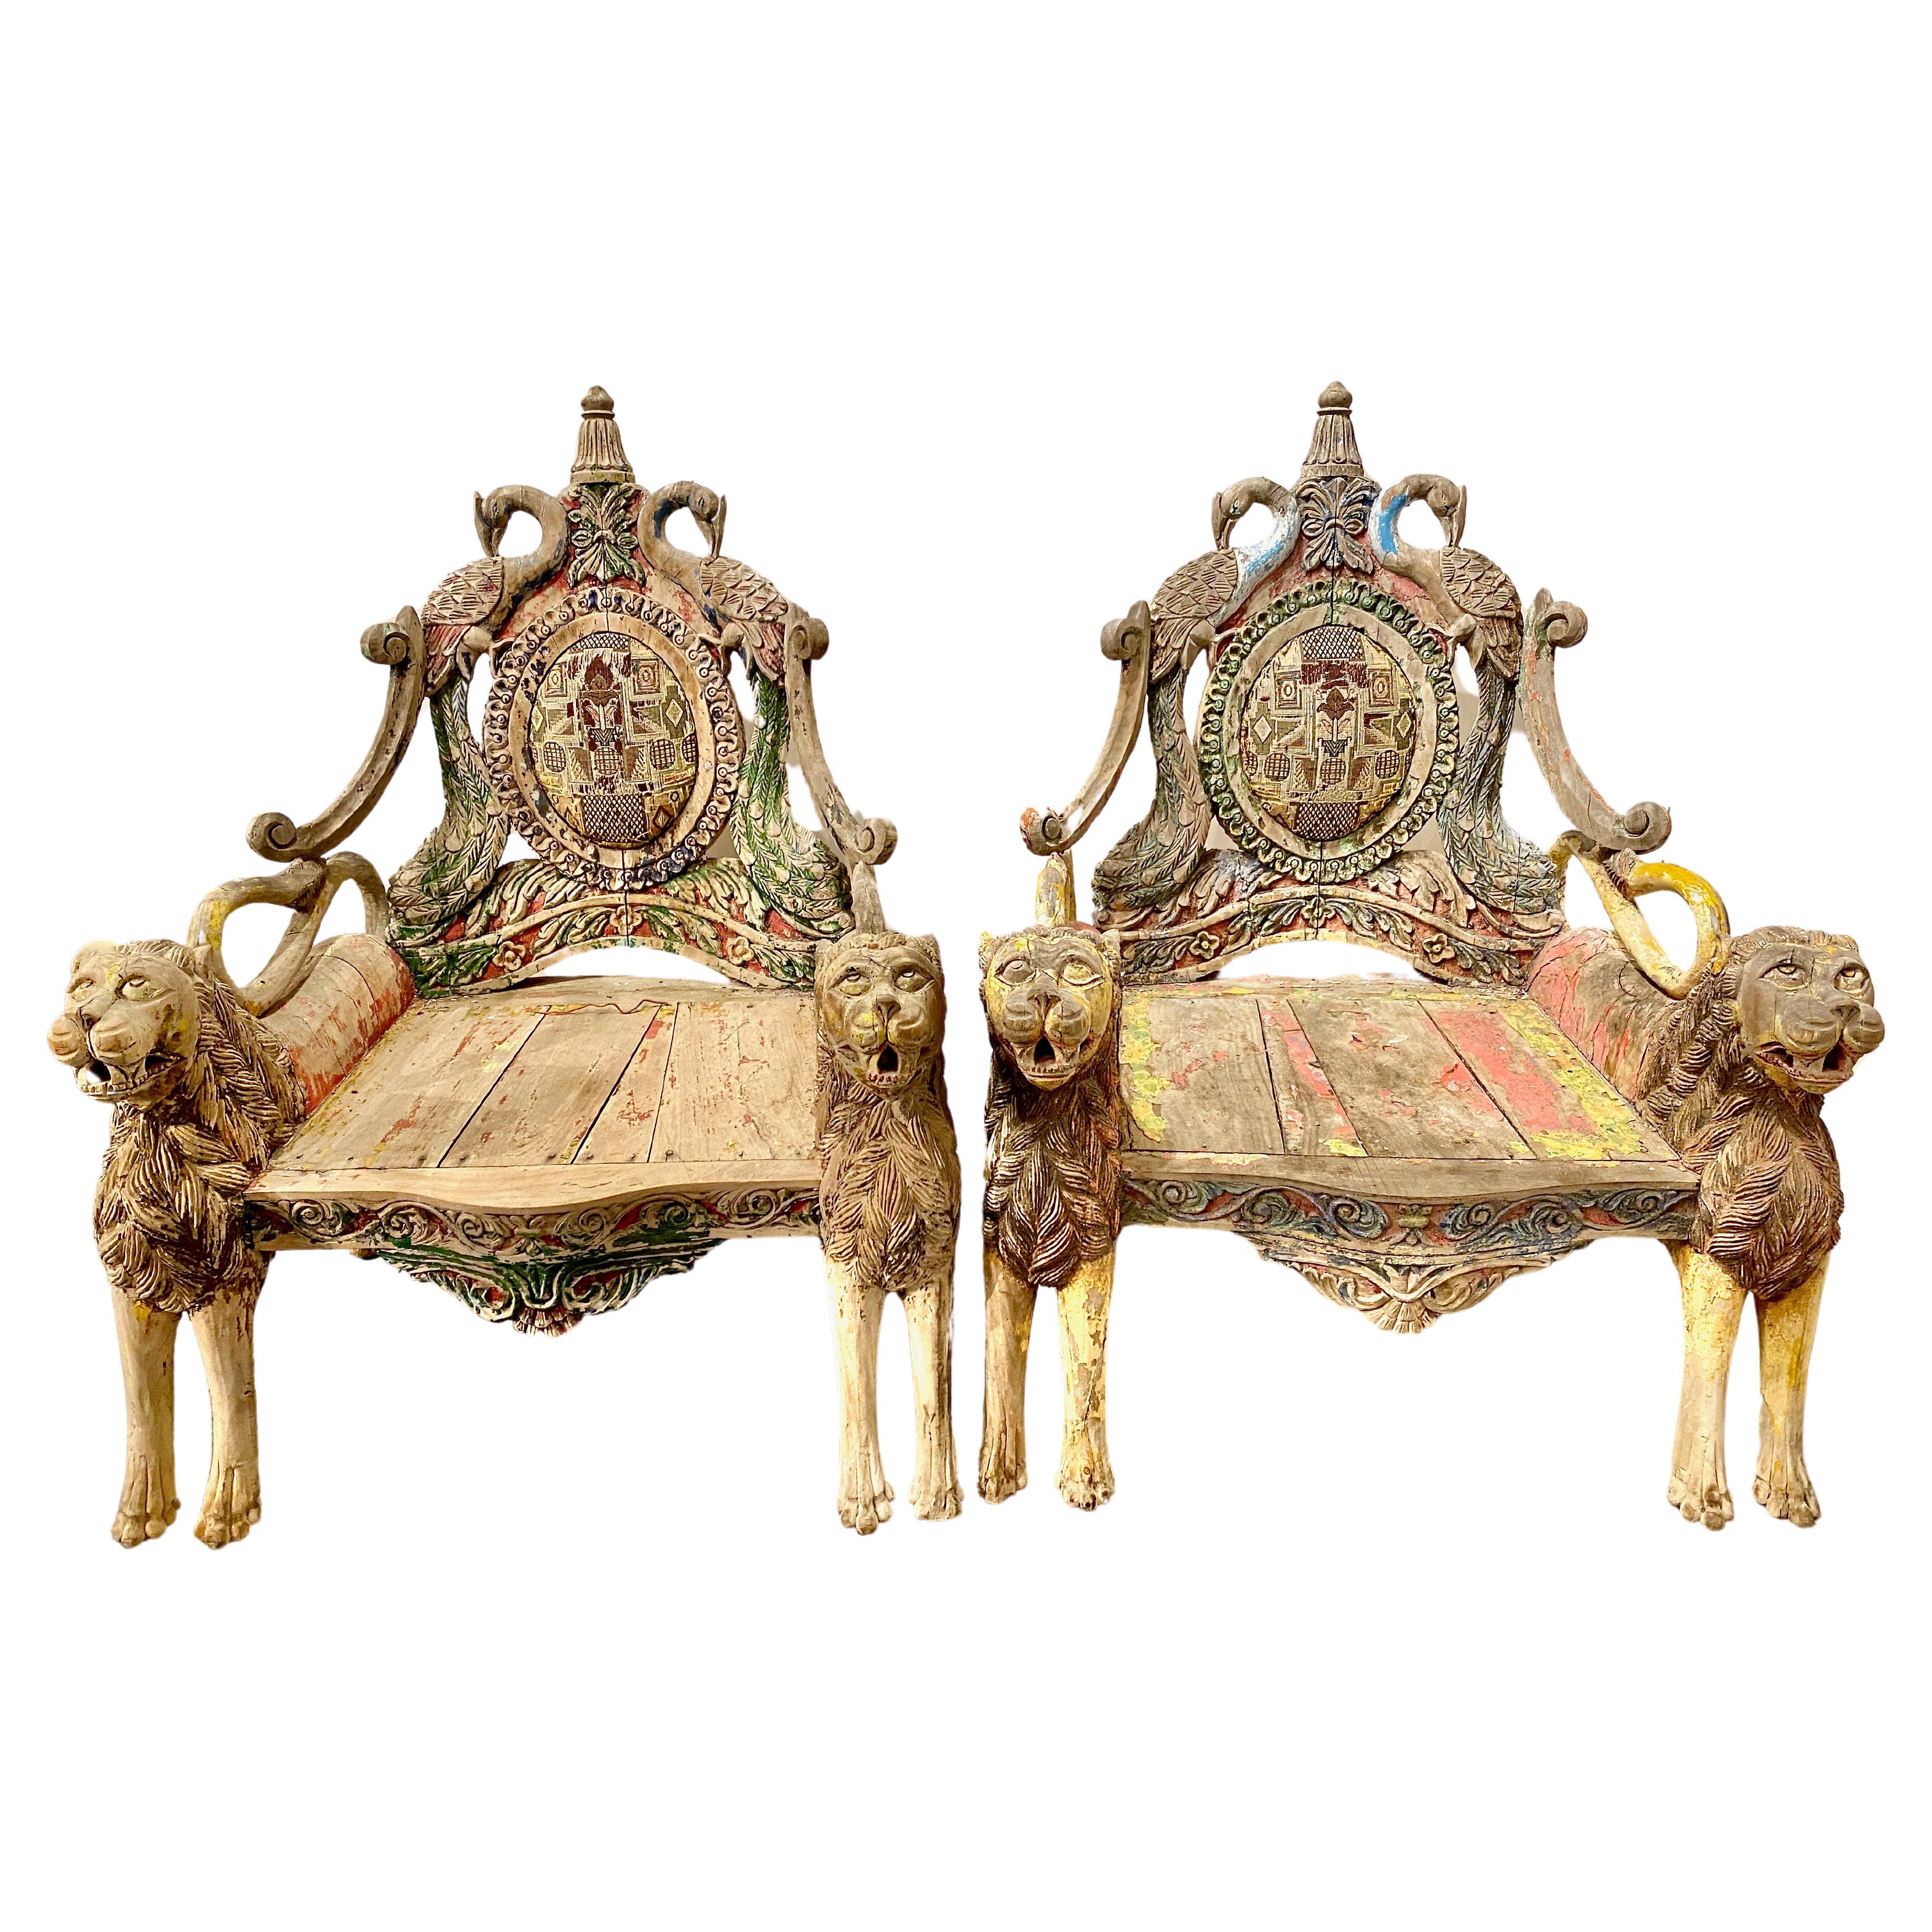 Il s'agit d'une extraordinaire paire de trônes indiens ou de chaises de cérémonie antiques élaborées. Les chaises sont composées de paires de lions entièrement sculptés soutenant les larges sièges dont les dossiers intègrent des paons sculptés